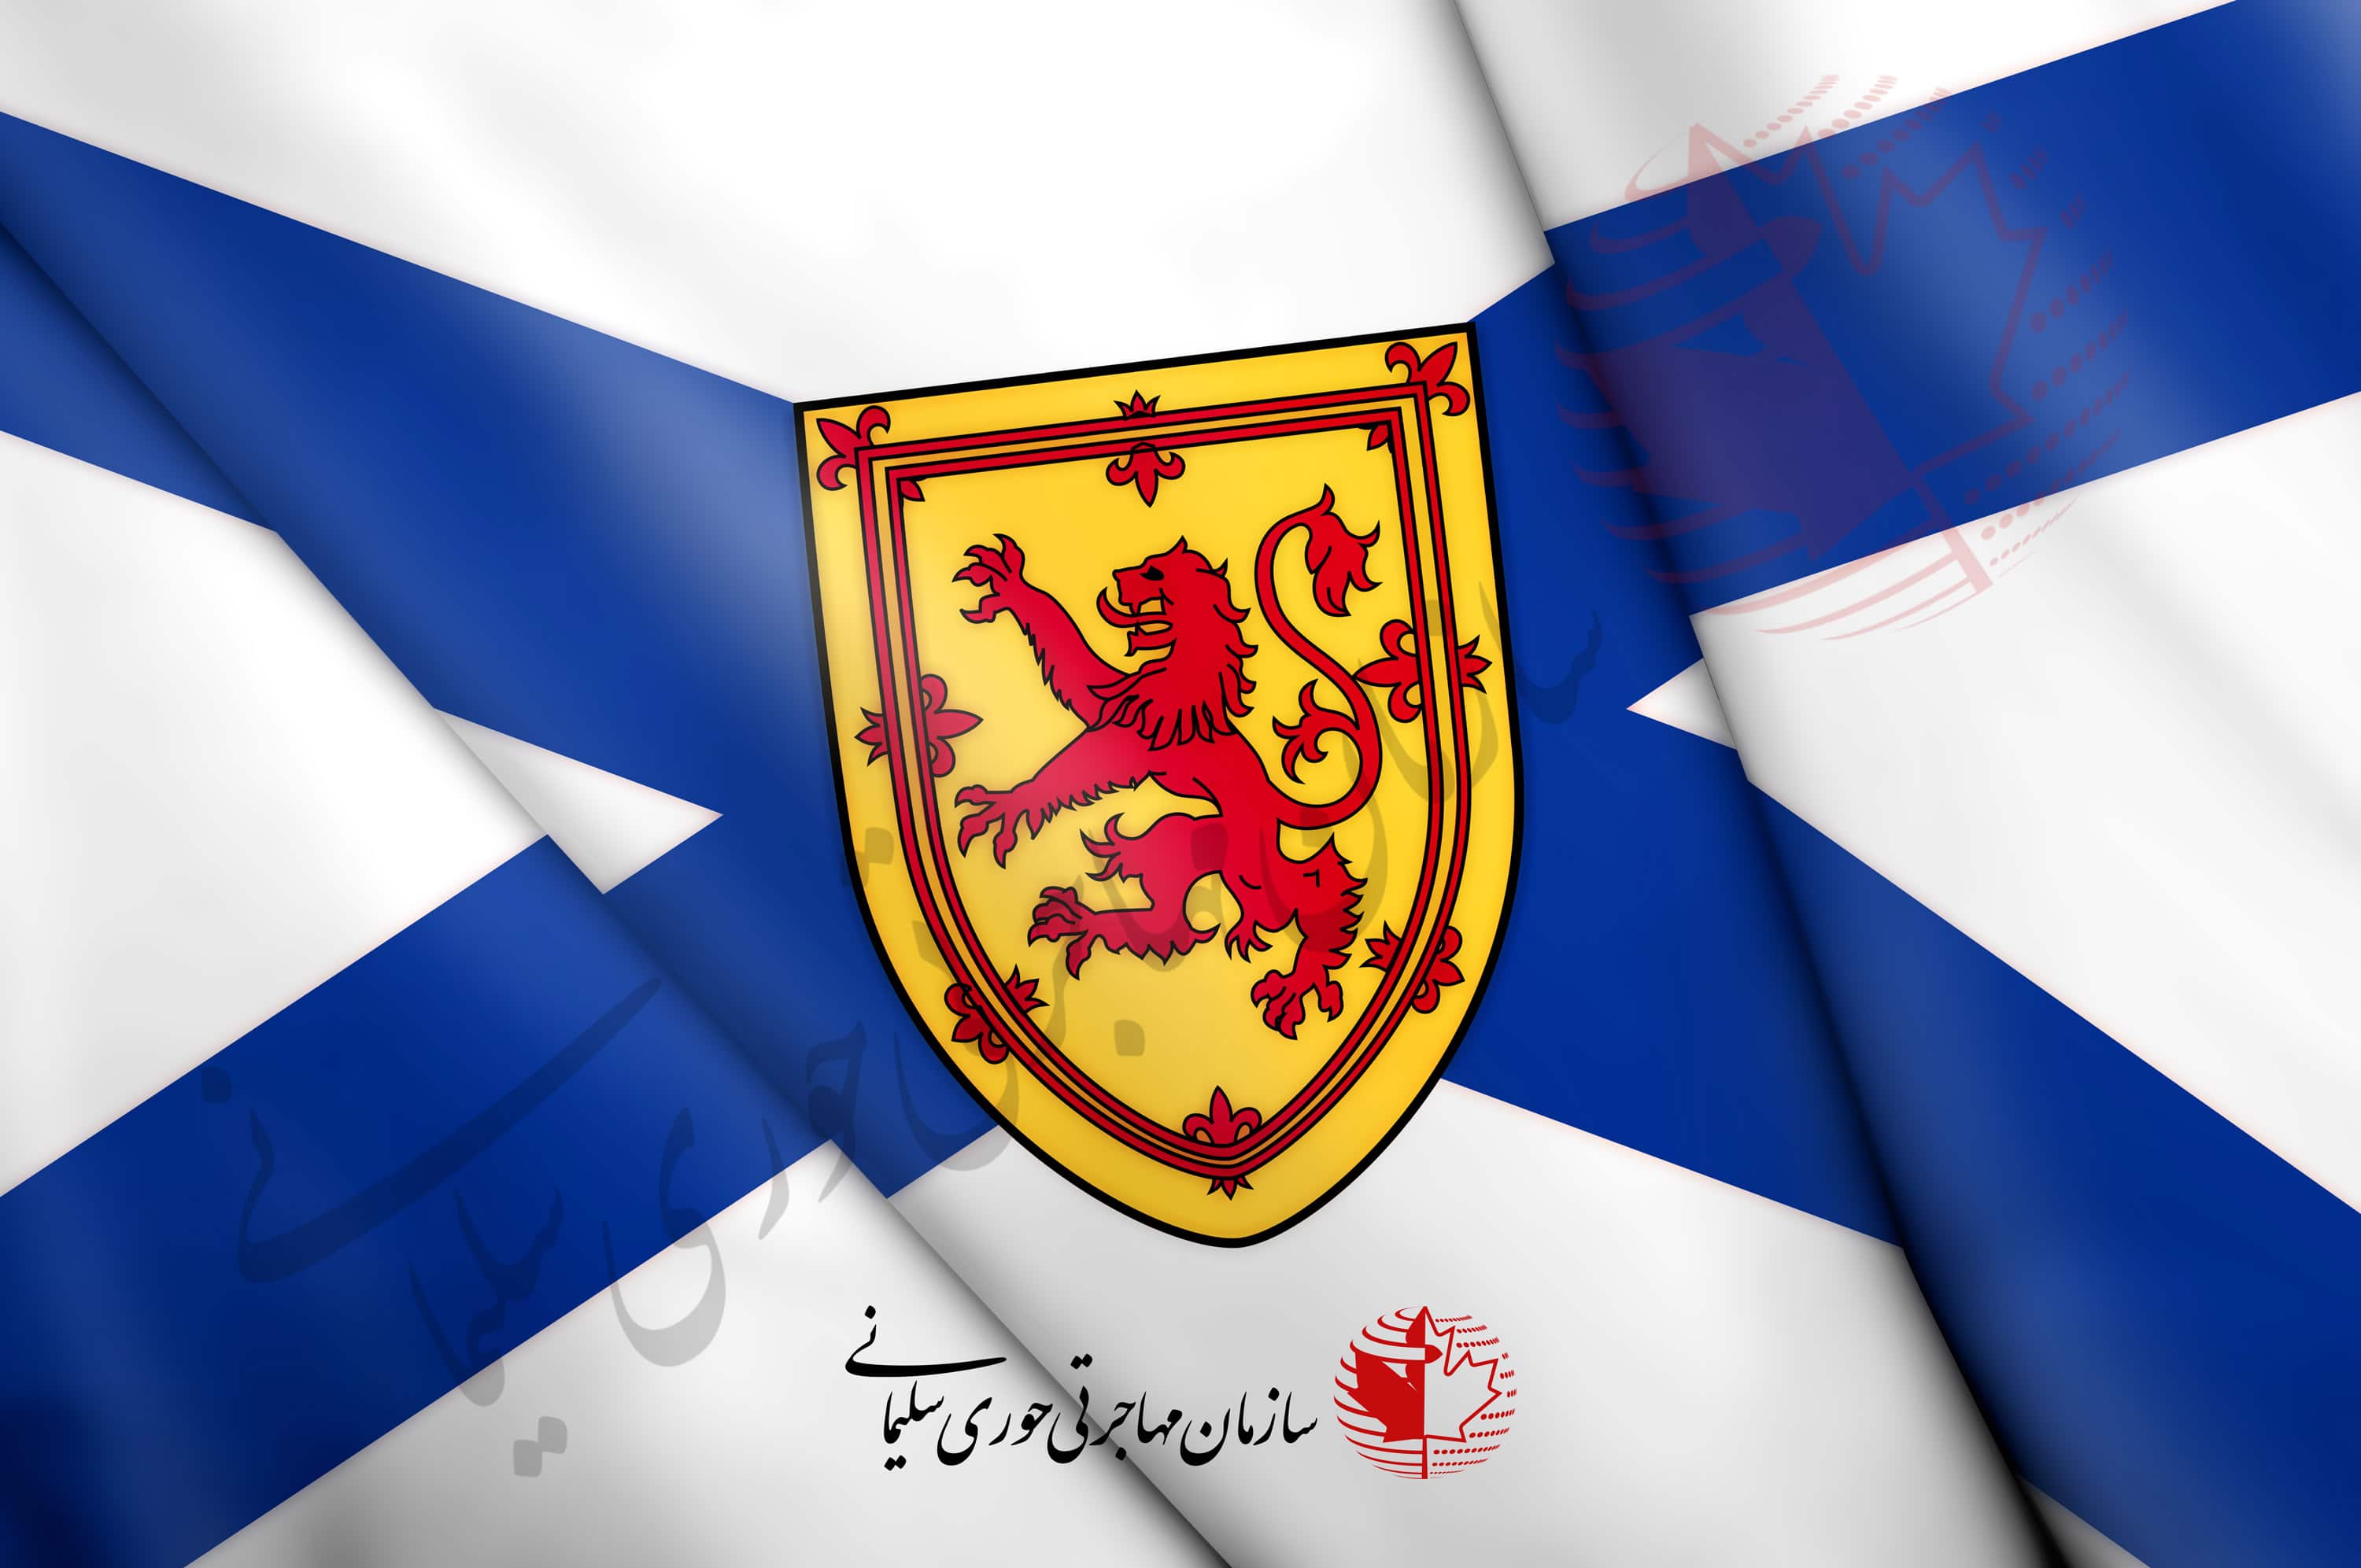 پرچم نوا اسکوشیا کانادا - اکسپرس اینتری نوا اسکوشیا